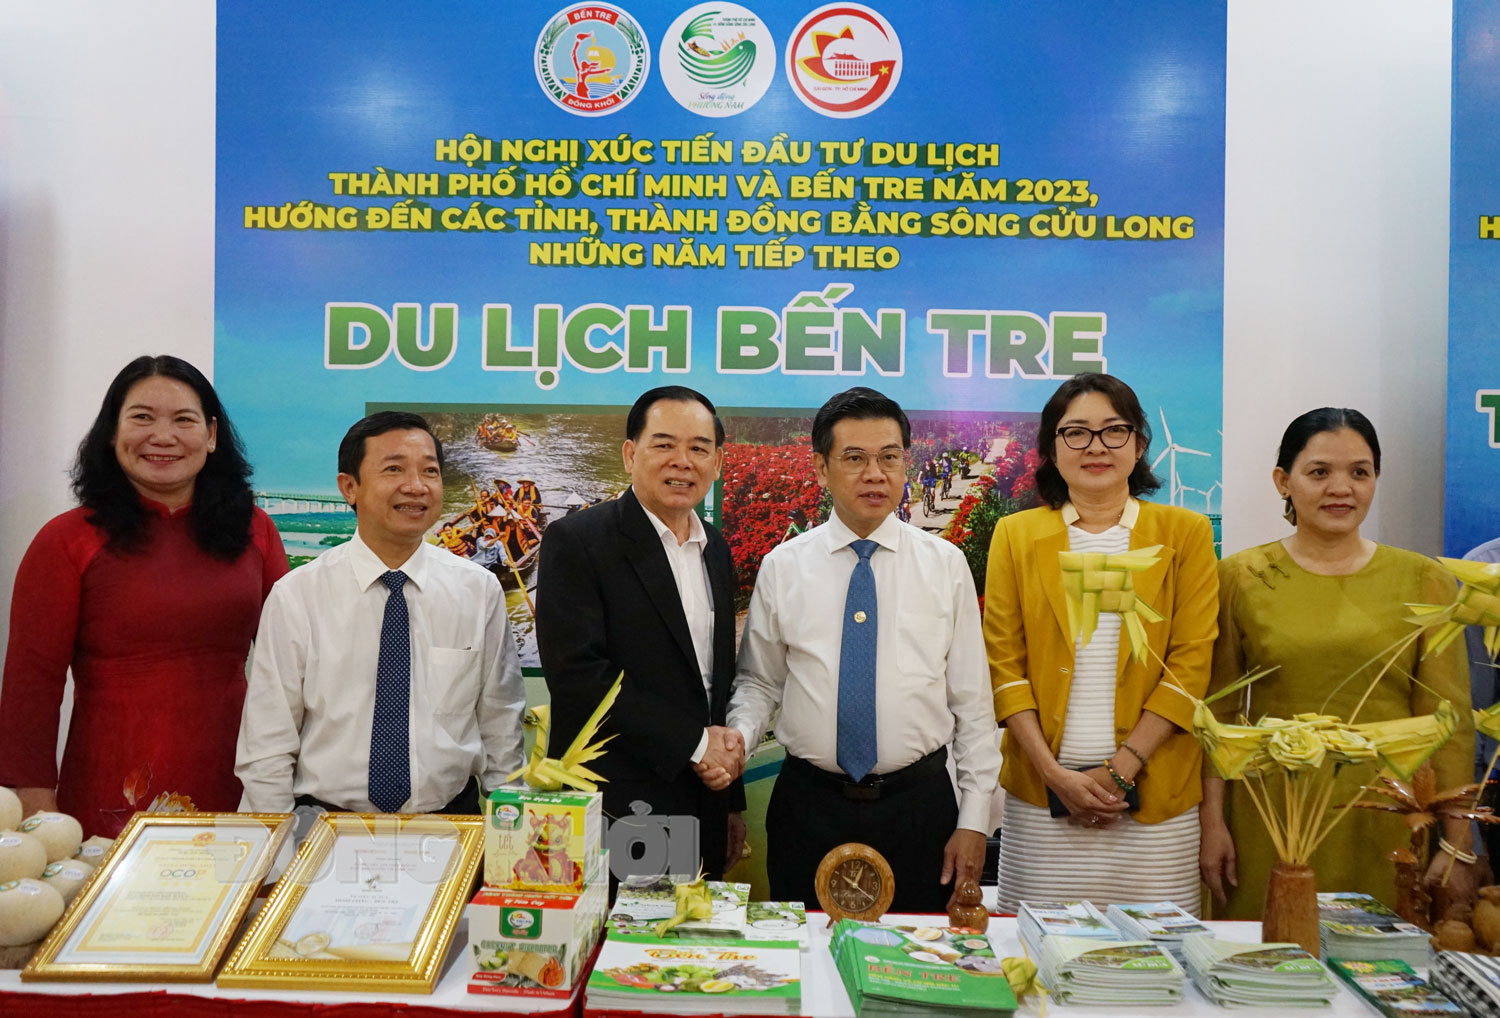 Tăng cường hợp tác xúc tiến đầu tư du lịch Bến Tre - TP. Hồ Chi Minh